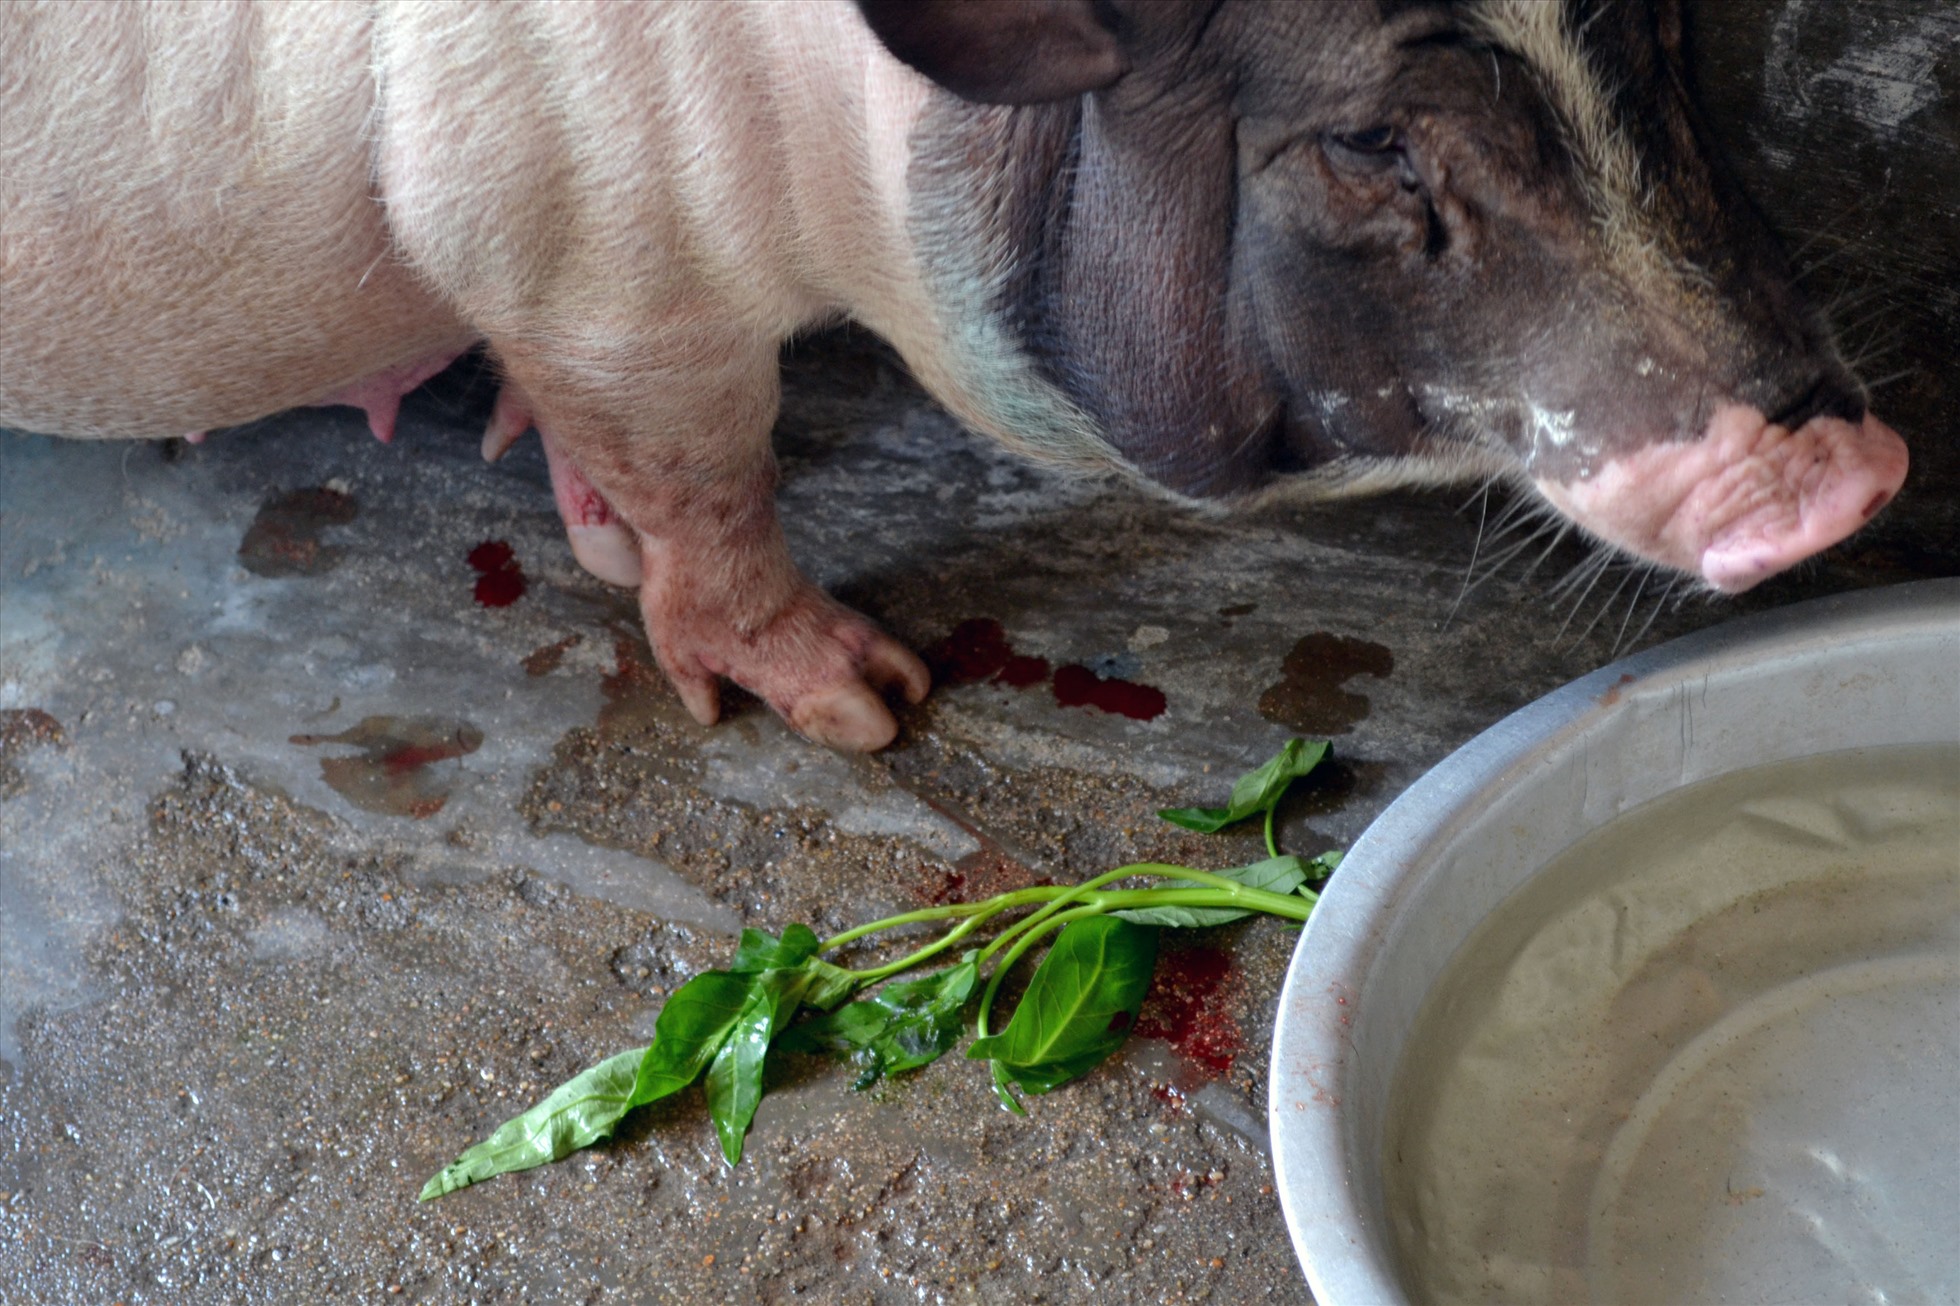 Sau khi tiêm vaccine phòng dịch tả lợn Châu Phi từ 5-7 ngày, nhiều con lợn của người chăn nuôi ở Quảng Ngãi bị sốt, bỏ ăn, máu xuất ra da, trong đó nhiều con bị chết.